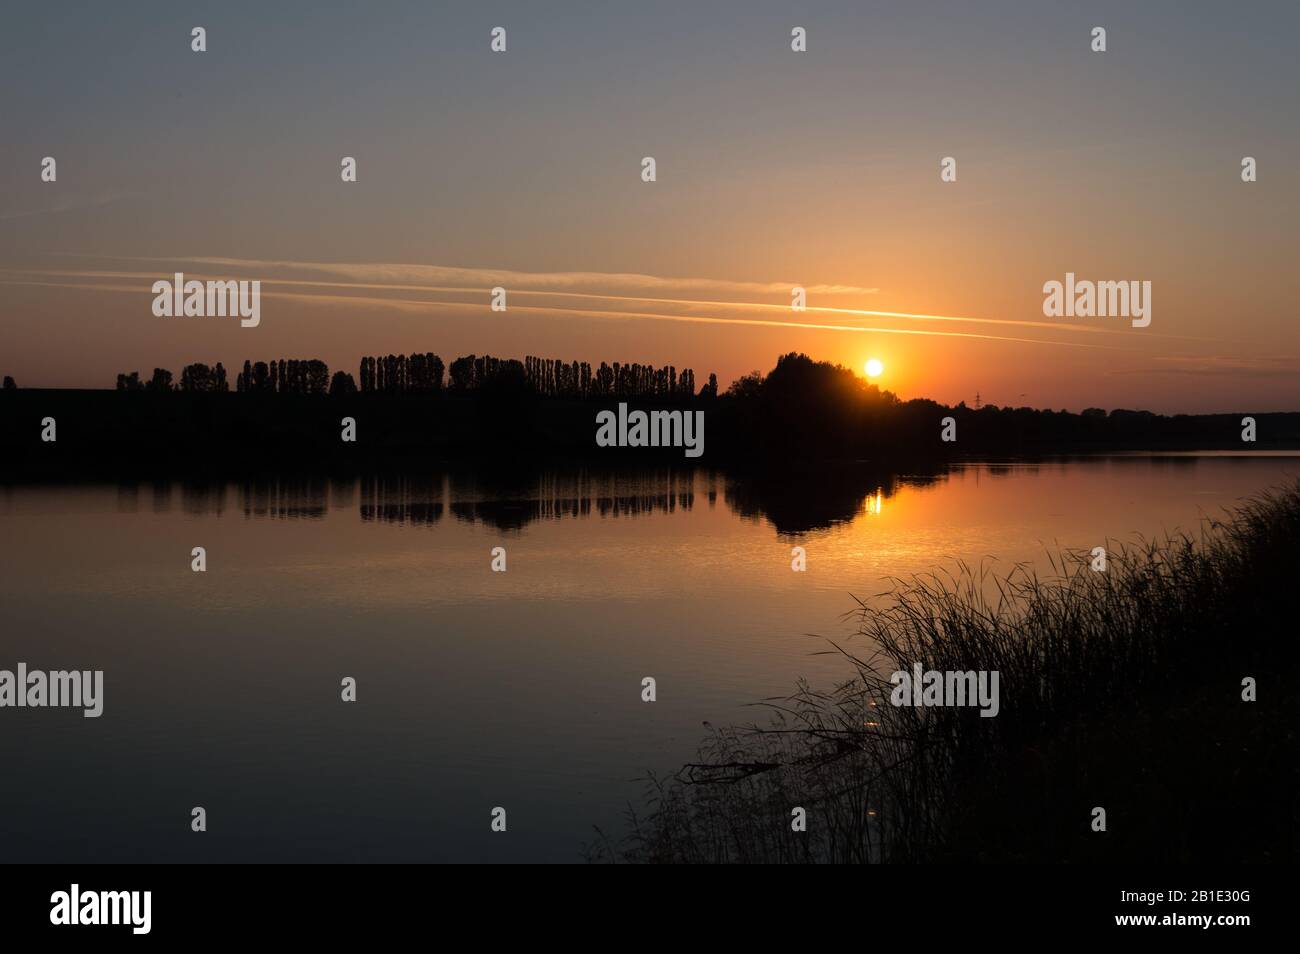 Das Bild der Schallwelle, das von der Silhouette der Bäume und ihrer Reflexion im Spiegel des ruhigen Sees bei Sonnenuntergang gemacht wird. Bäume an einem Seeufer bei Sonnenuntergang. Stockfoto